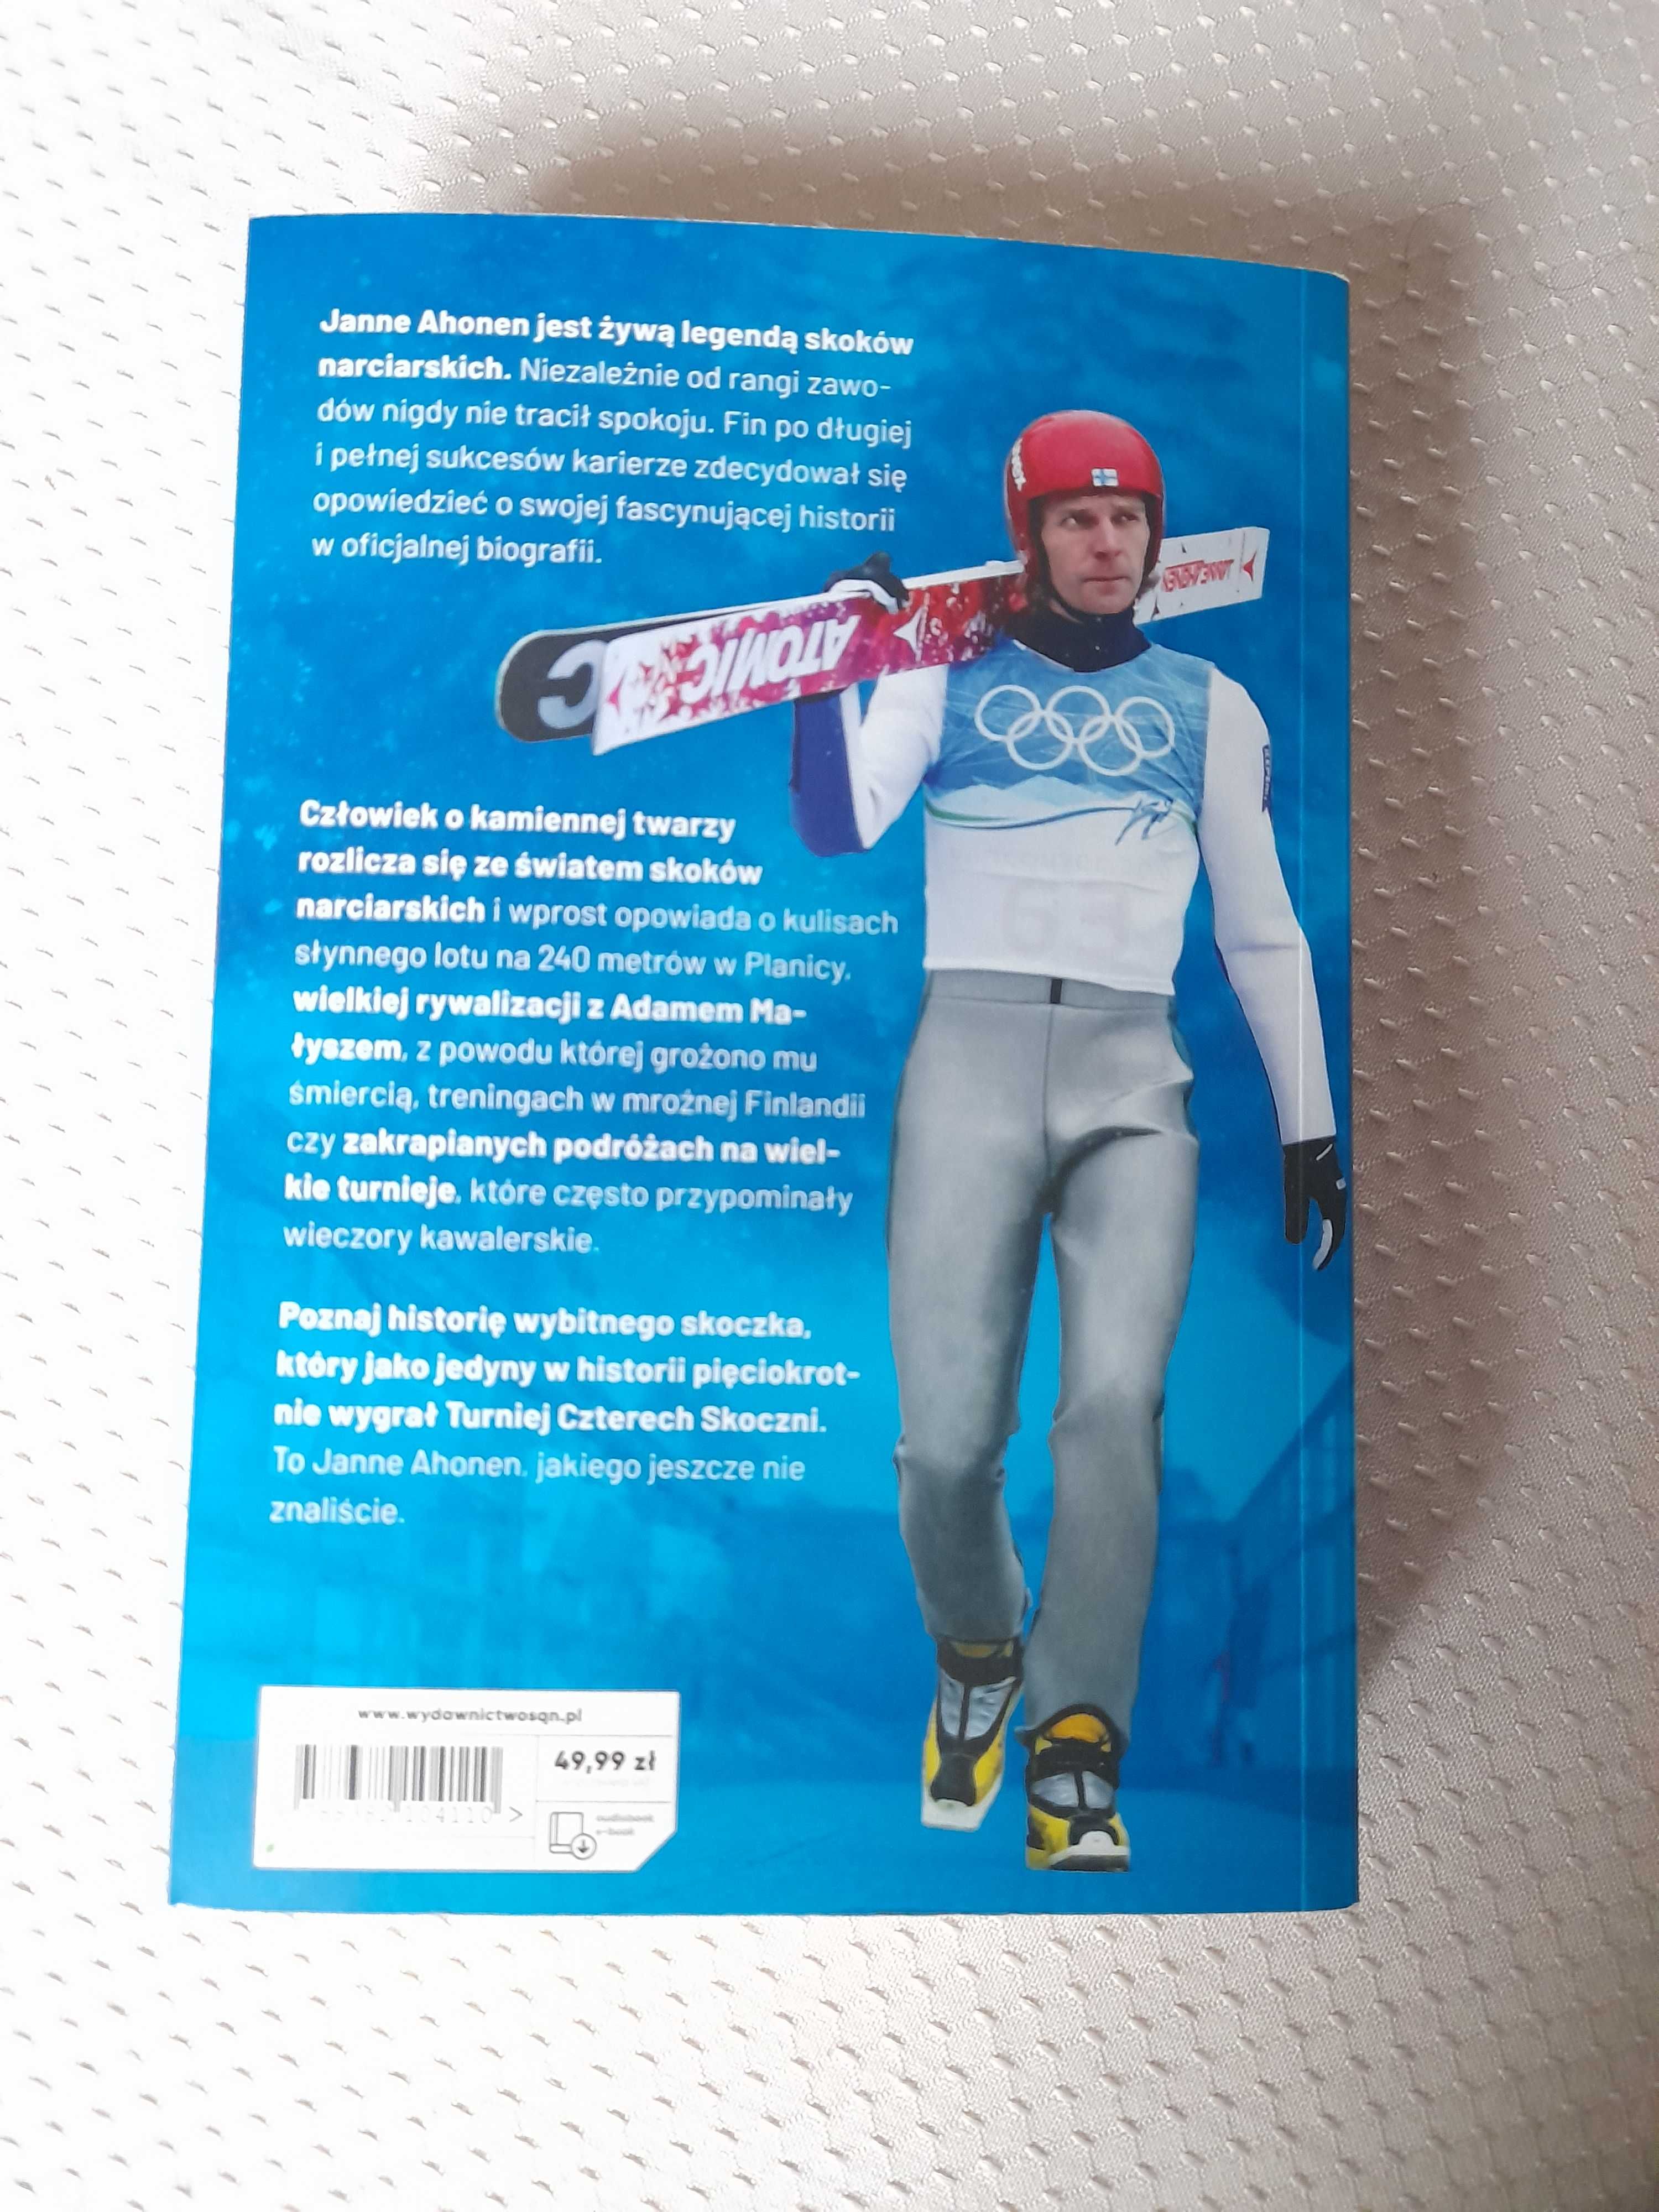 "Janne Ahonen. Oficjalna biografia legendy skoków narciarskich"